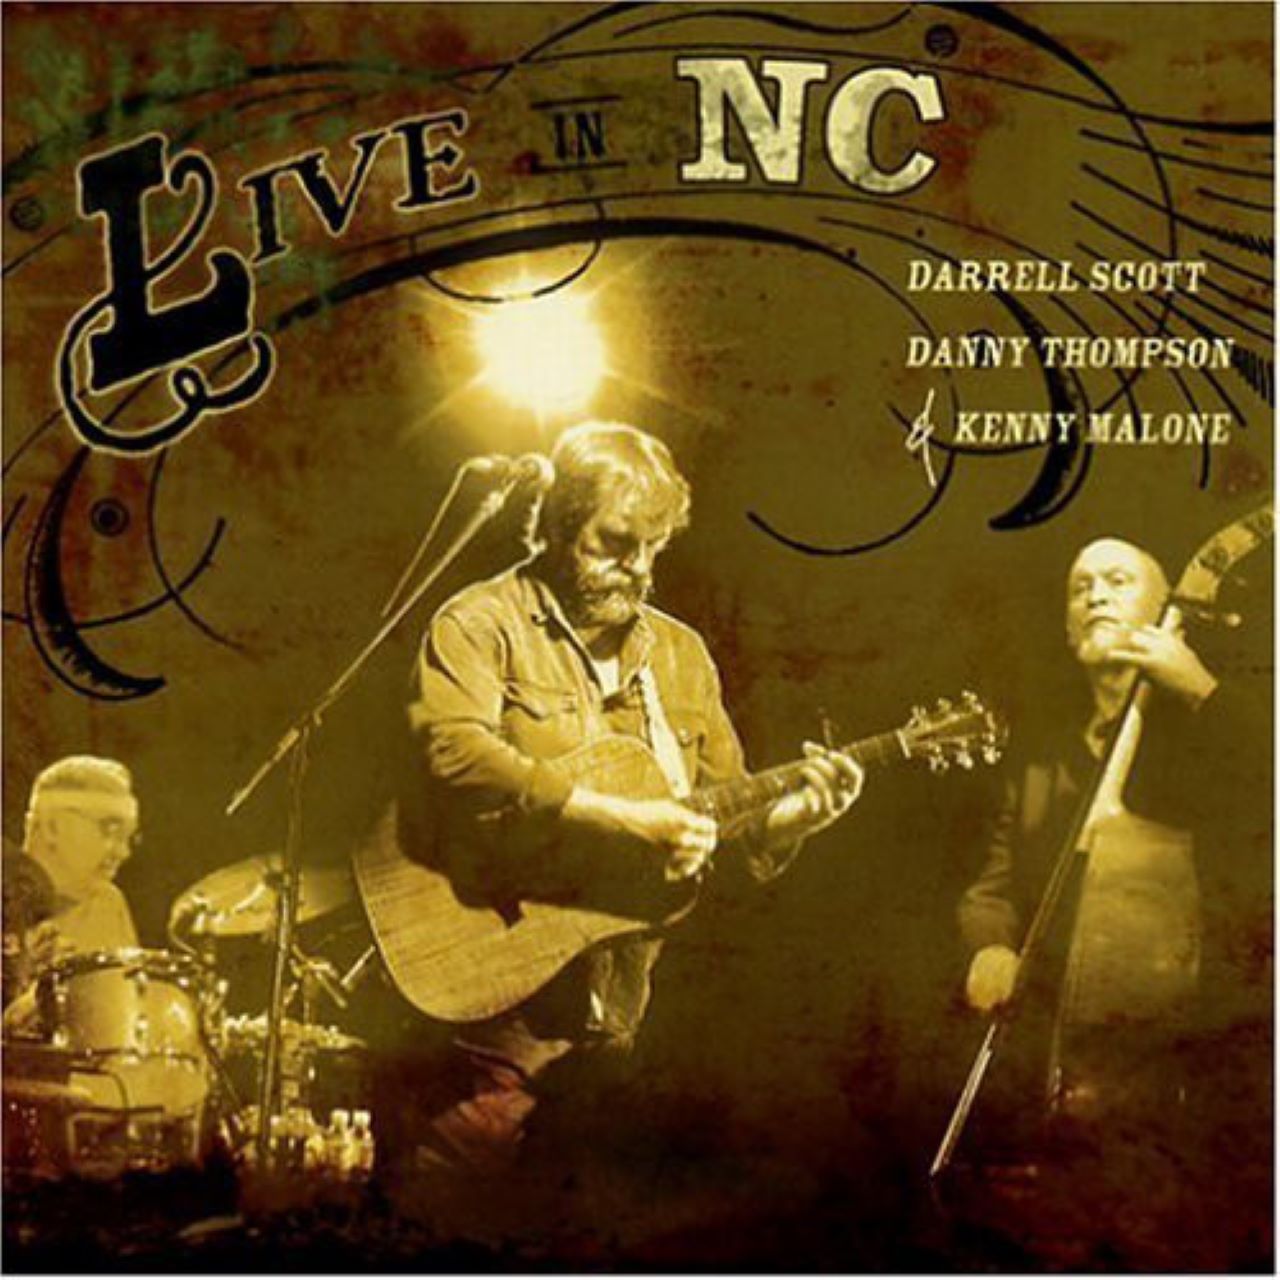 Darrell Scott, Danny Thompson & Kenny Malone - Live In NC cover album